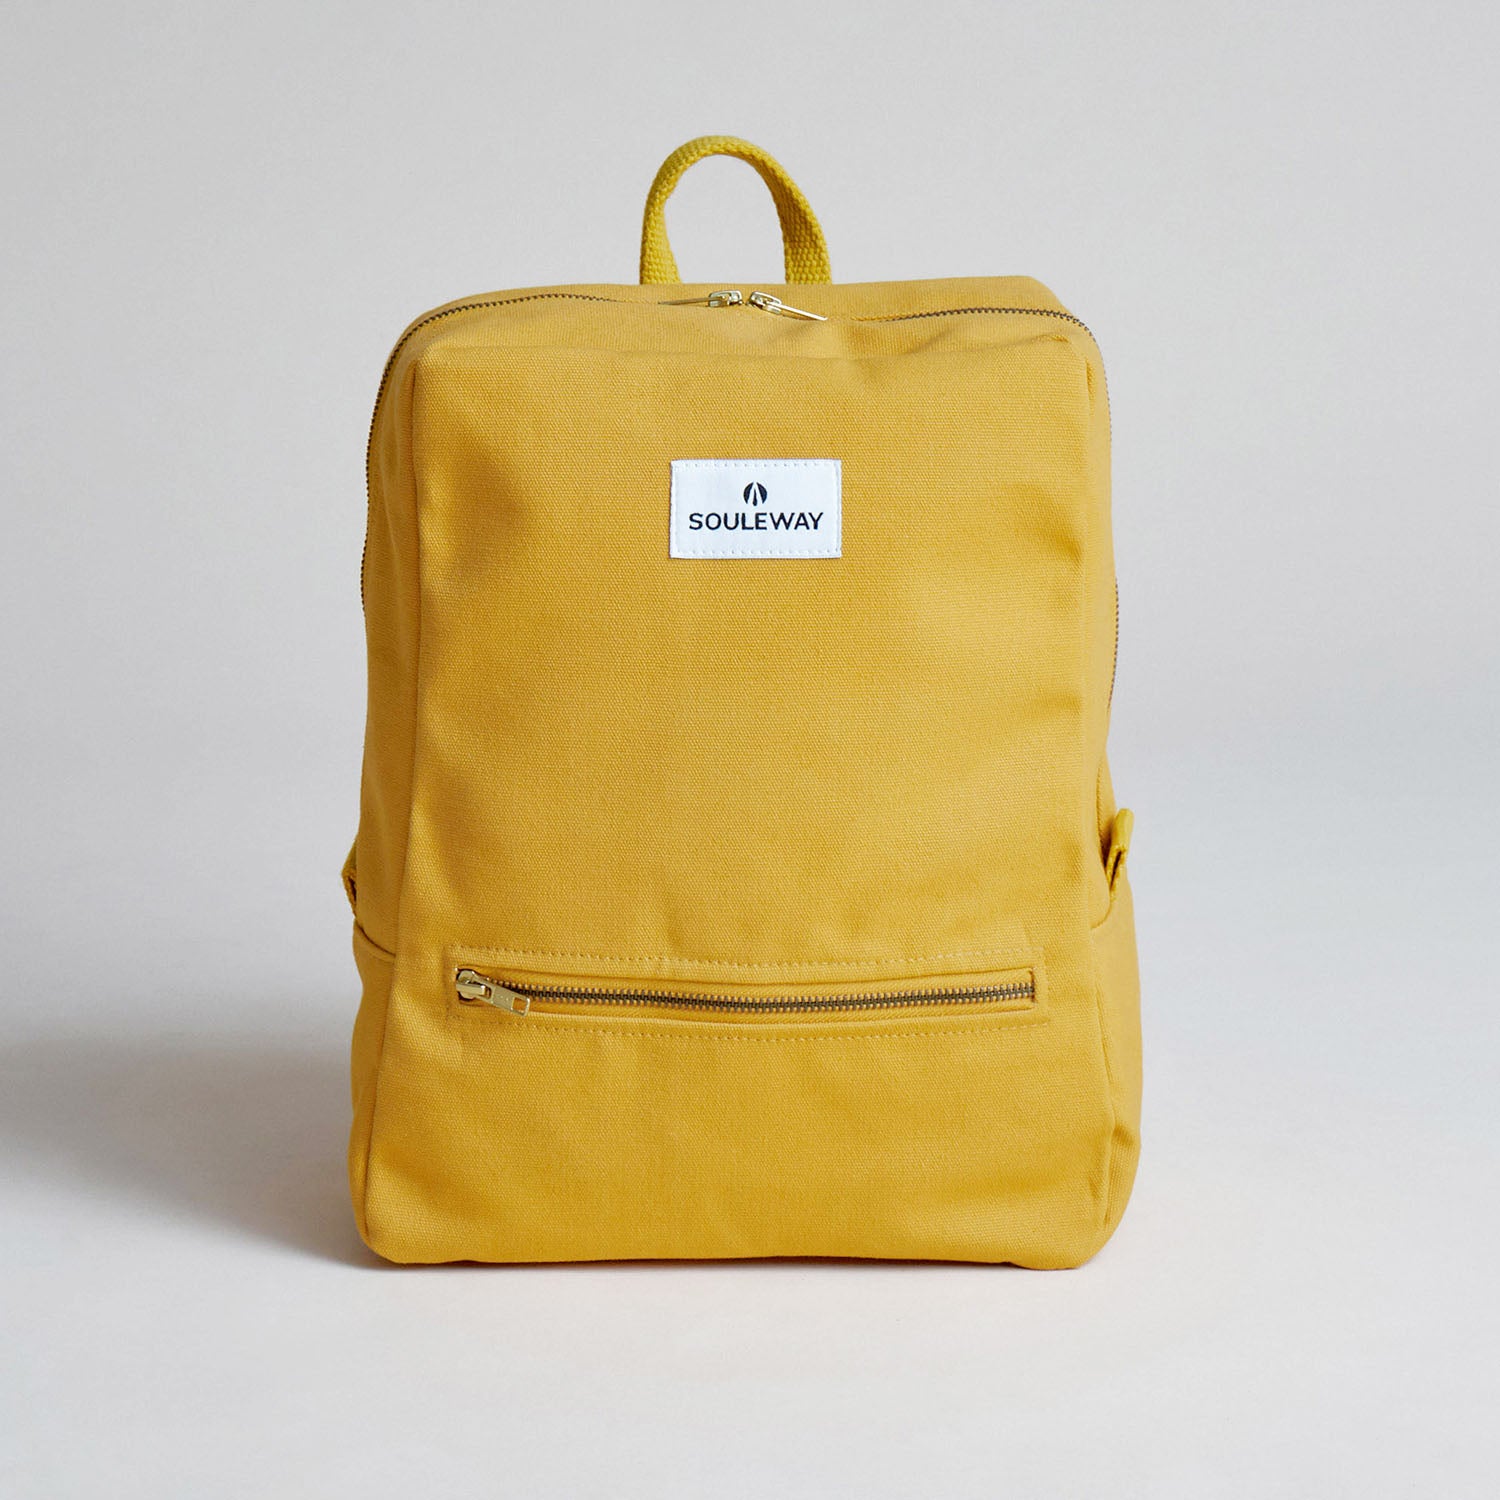 SOULEWAY - Daypack Rucksack, 12 Liter Volumen, Laptopfach 13 Zoll, Made in Germany, Handgepäck, vegan, wasserabweisend, Mustard Yellow von Souleway